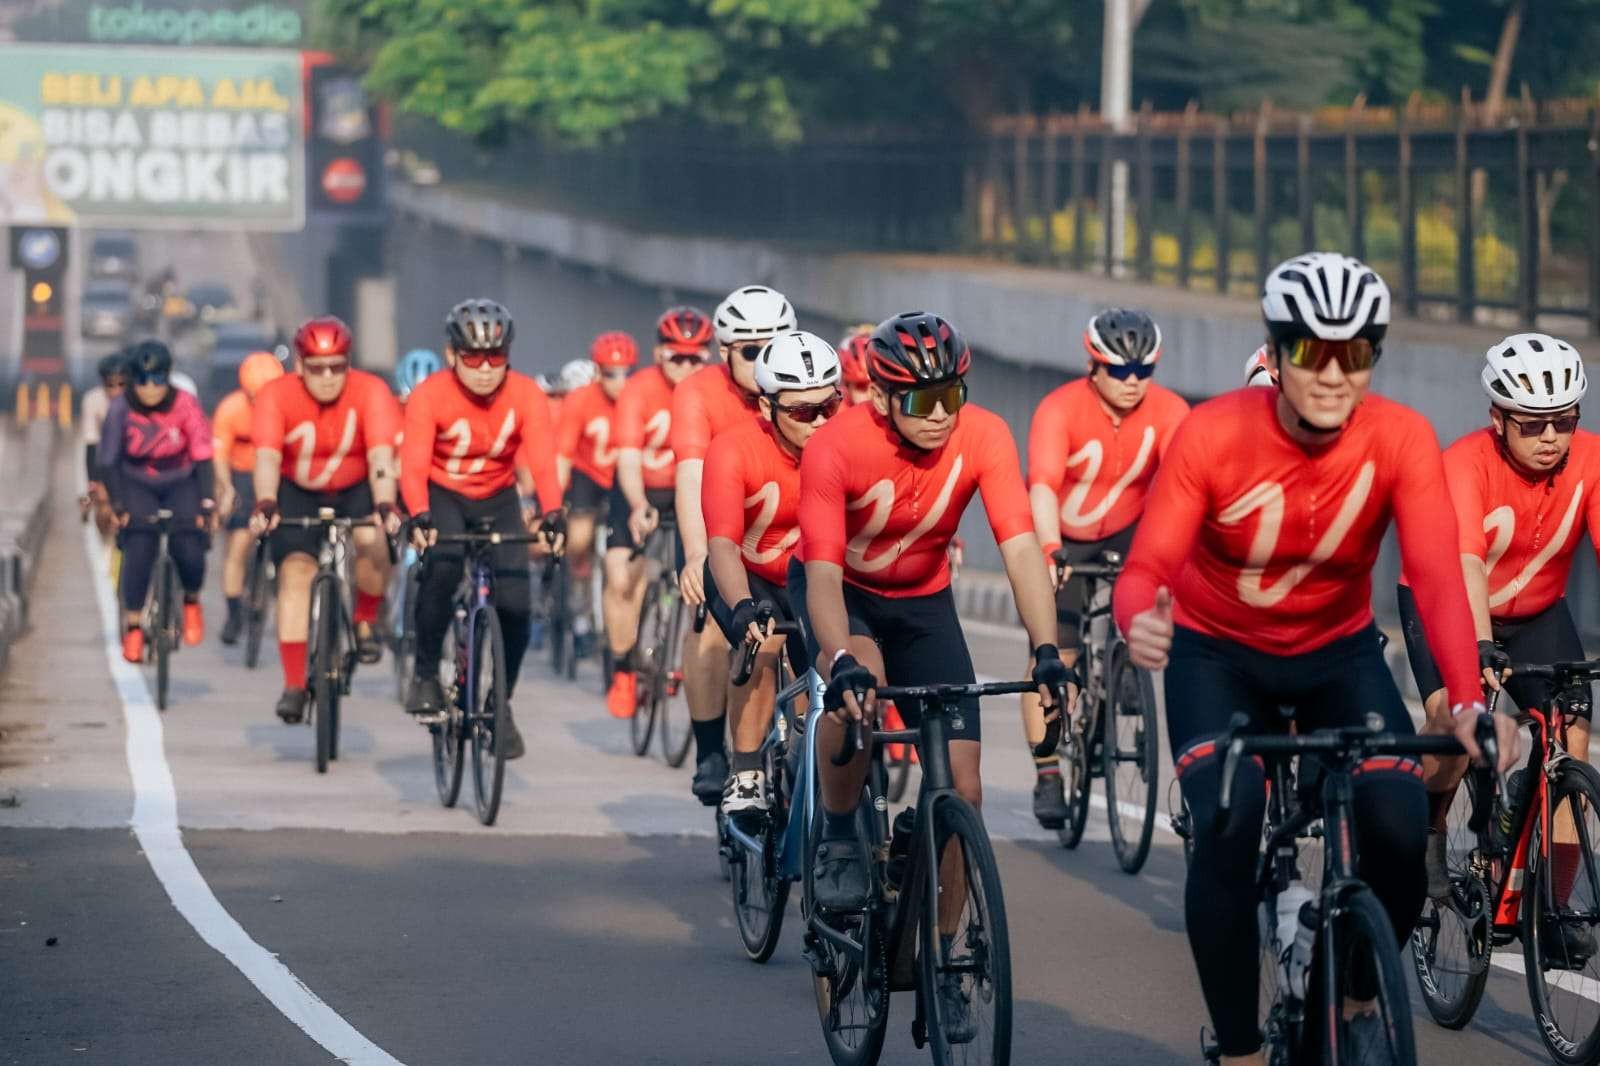 Gowes bareng 150an cyclist keliling Surabaya di acara ulang tahun kedua VINCC.